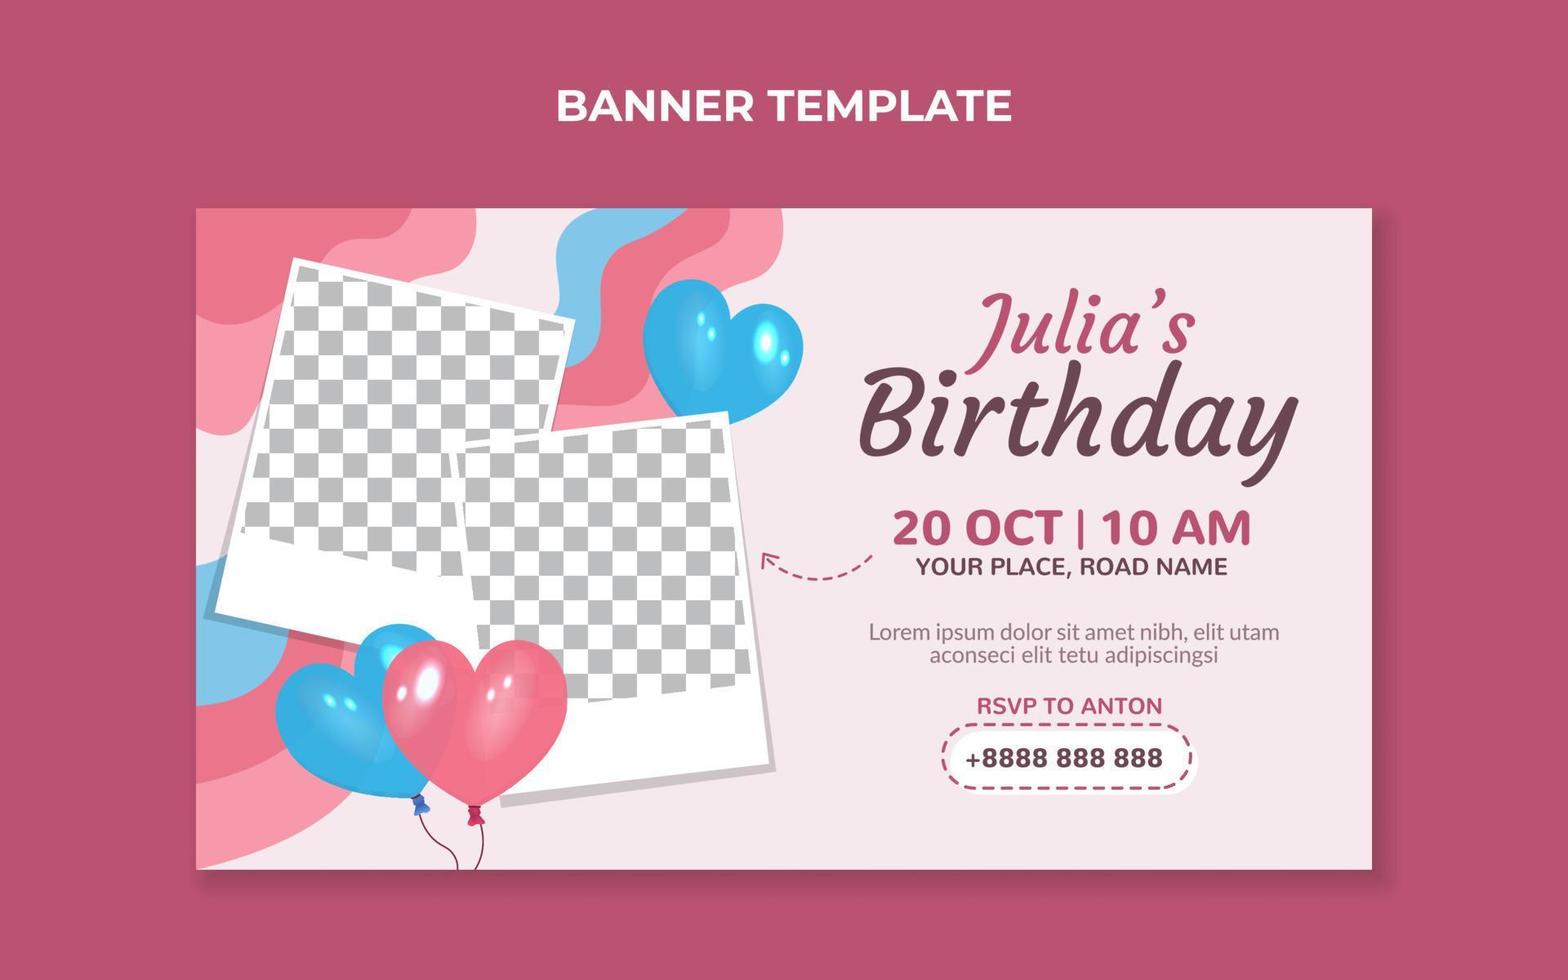 modelo de banner de convite de aniversário com balões em forma de coração vetor